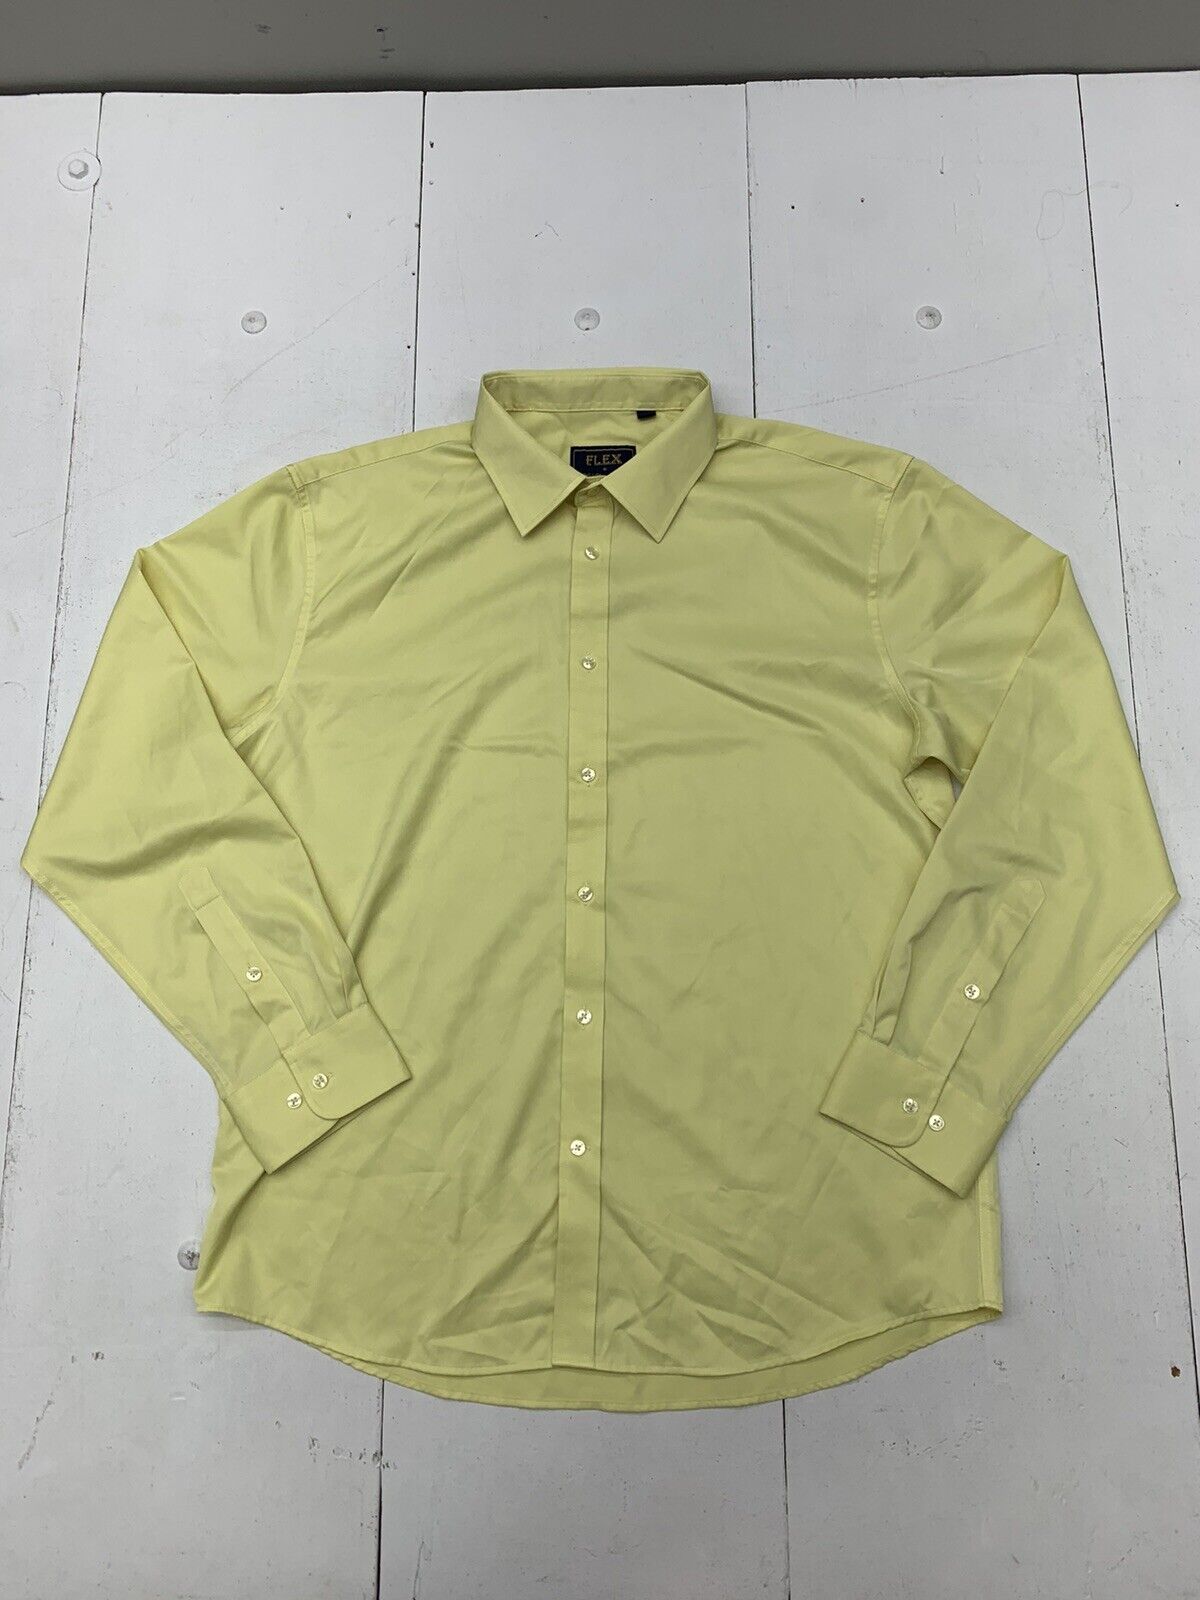 Flex Mens Yellow Long Sleeve Button Up Dress Shirt Size Large